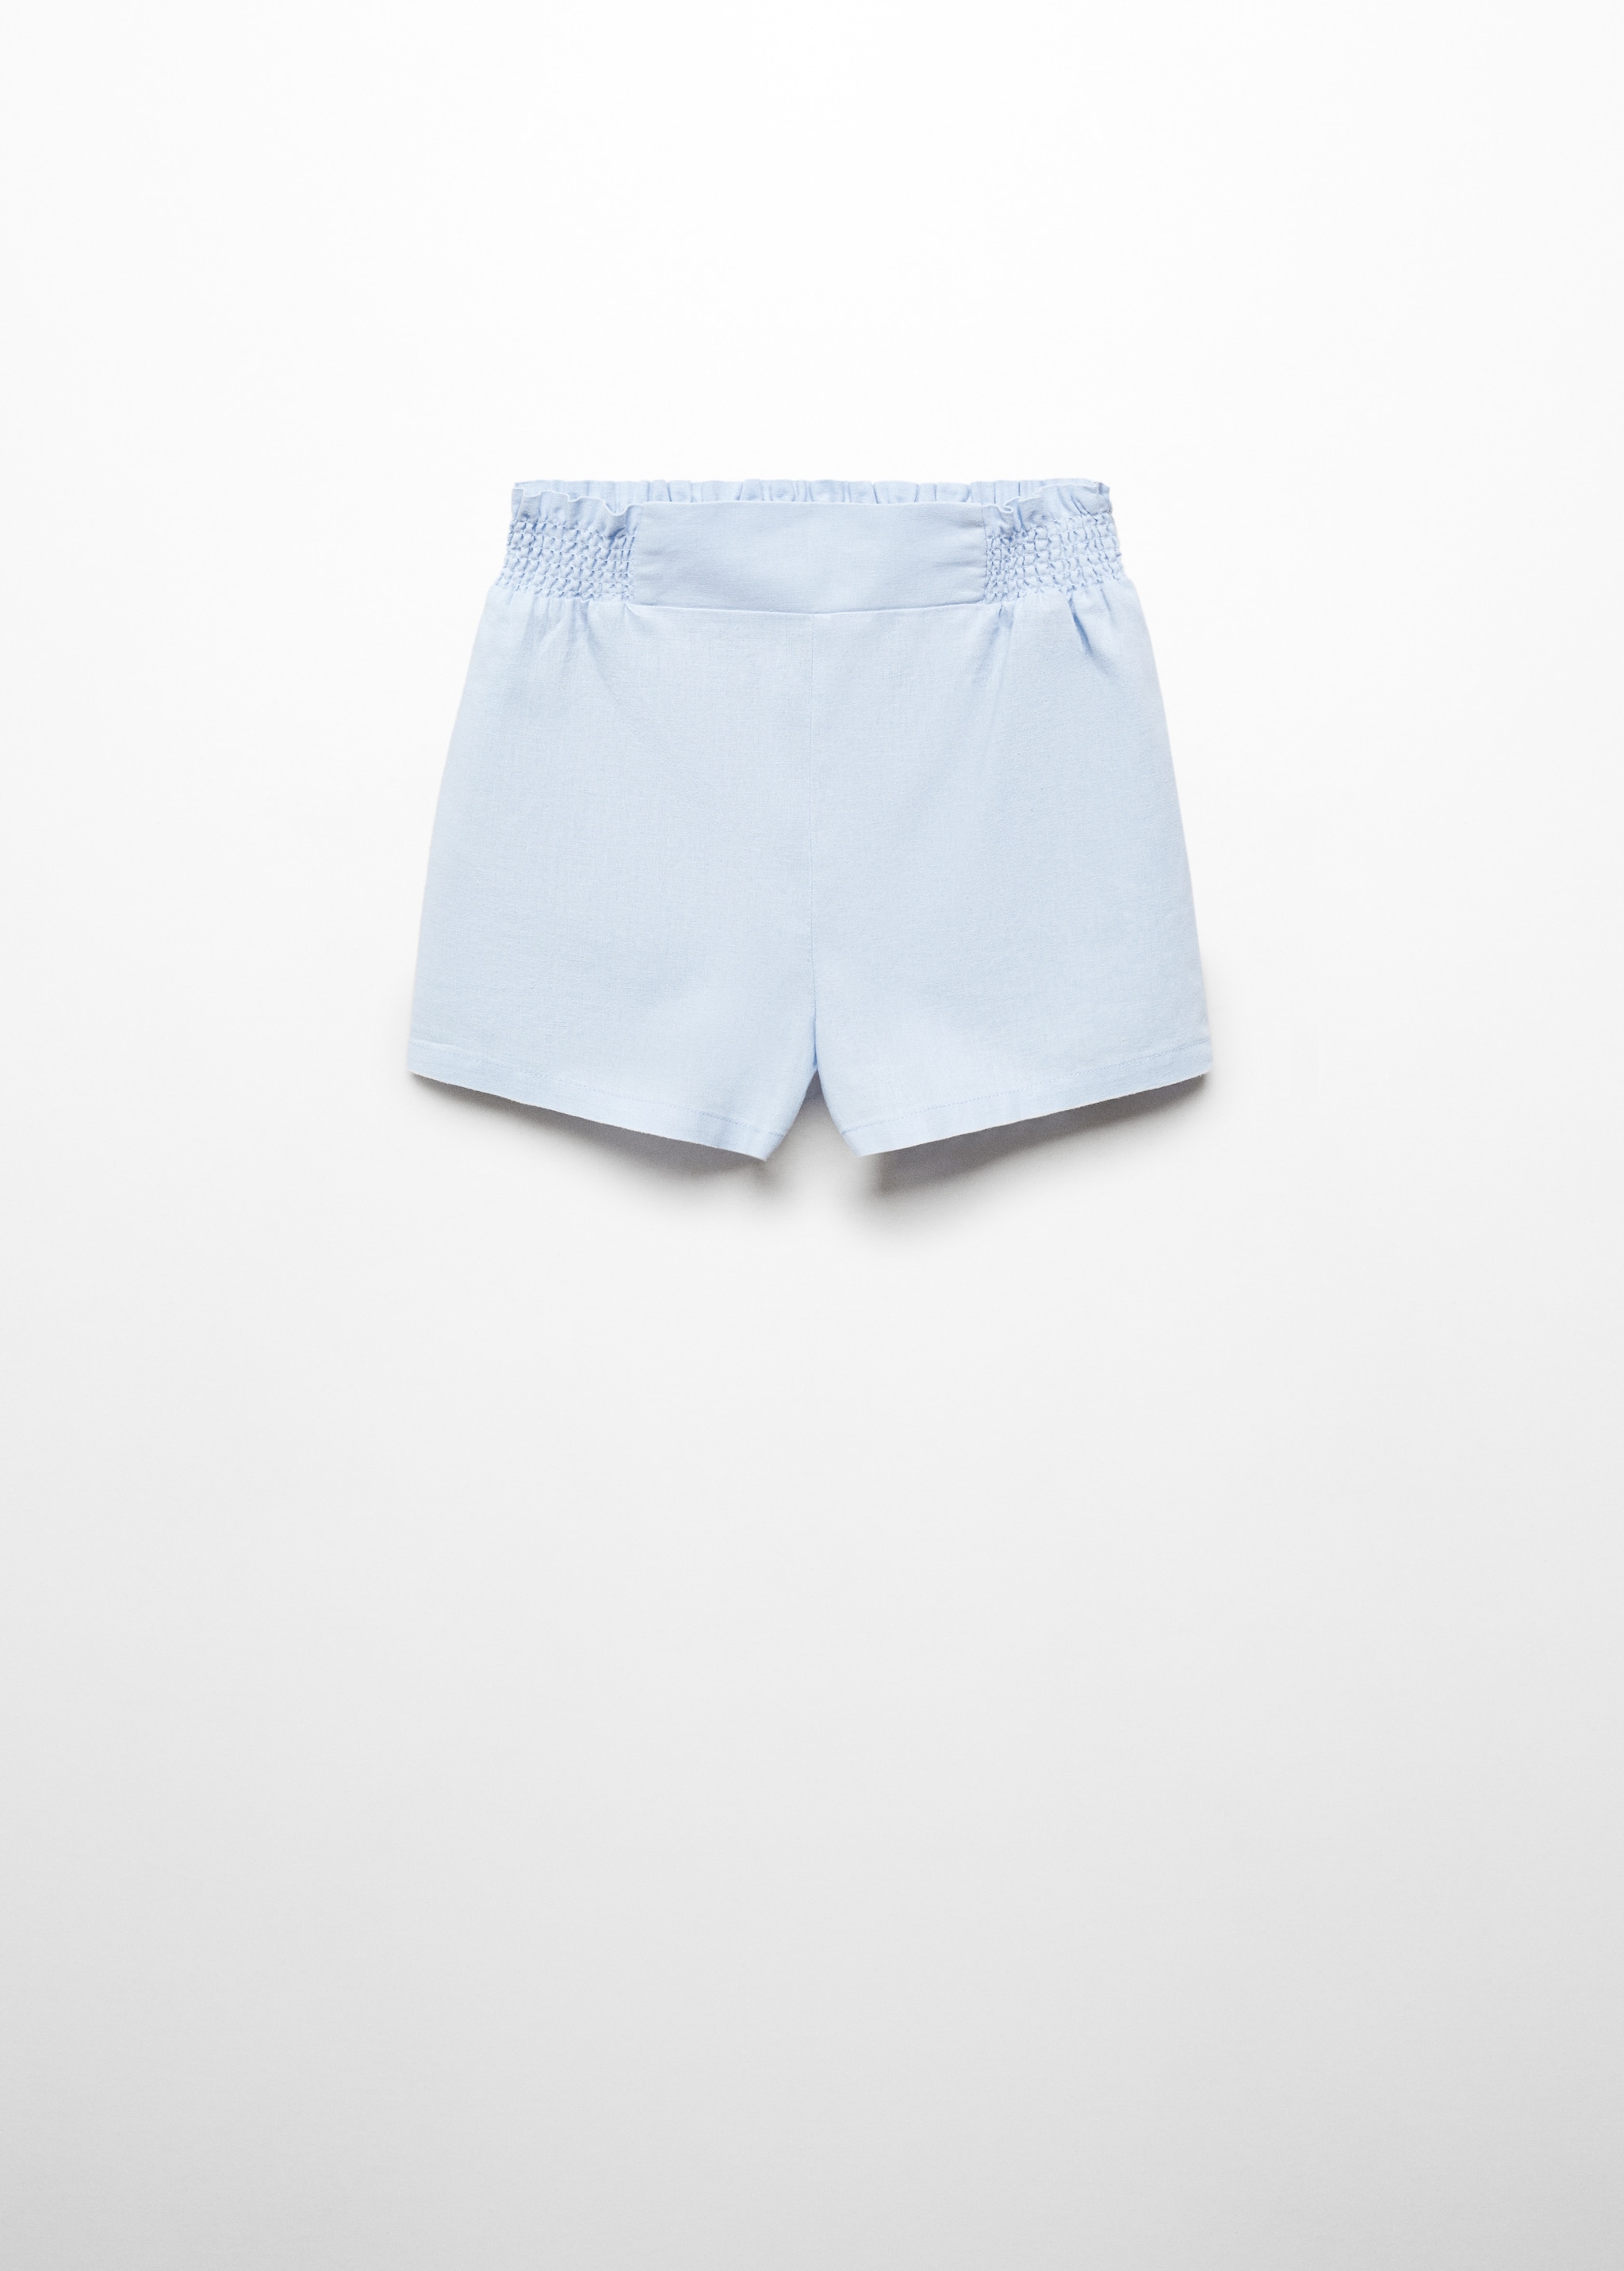 Short lino cintura elástica - Artículo sin modelo